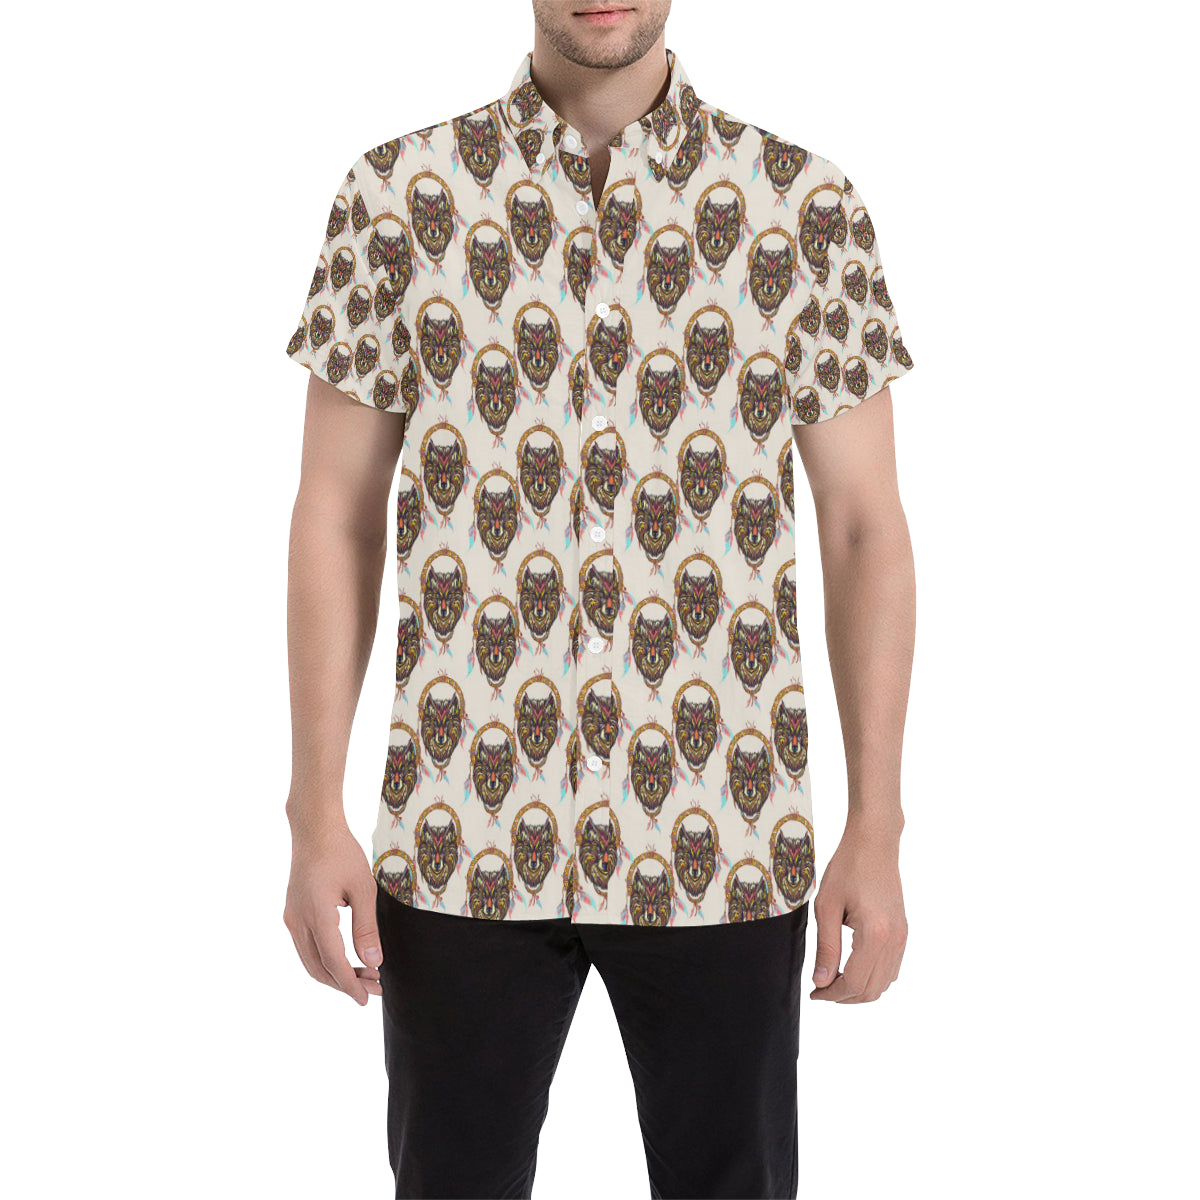 Wolf Tribal Dream Catcher Design Print Men's Short Sleeve Button Up Shirt